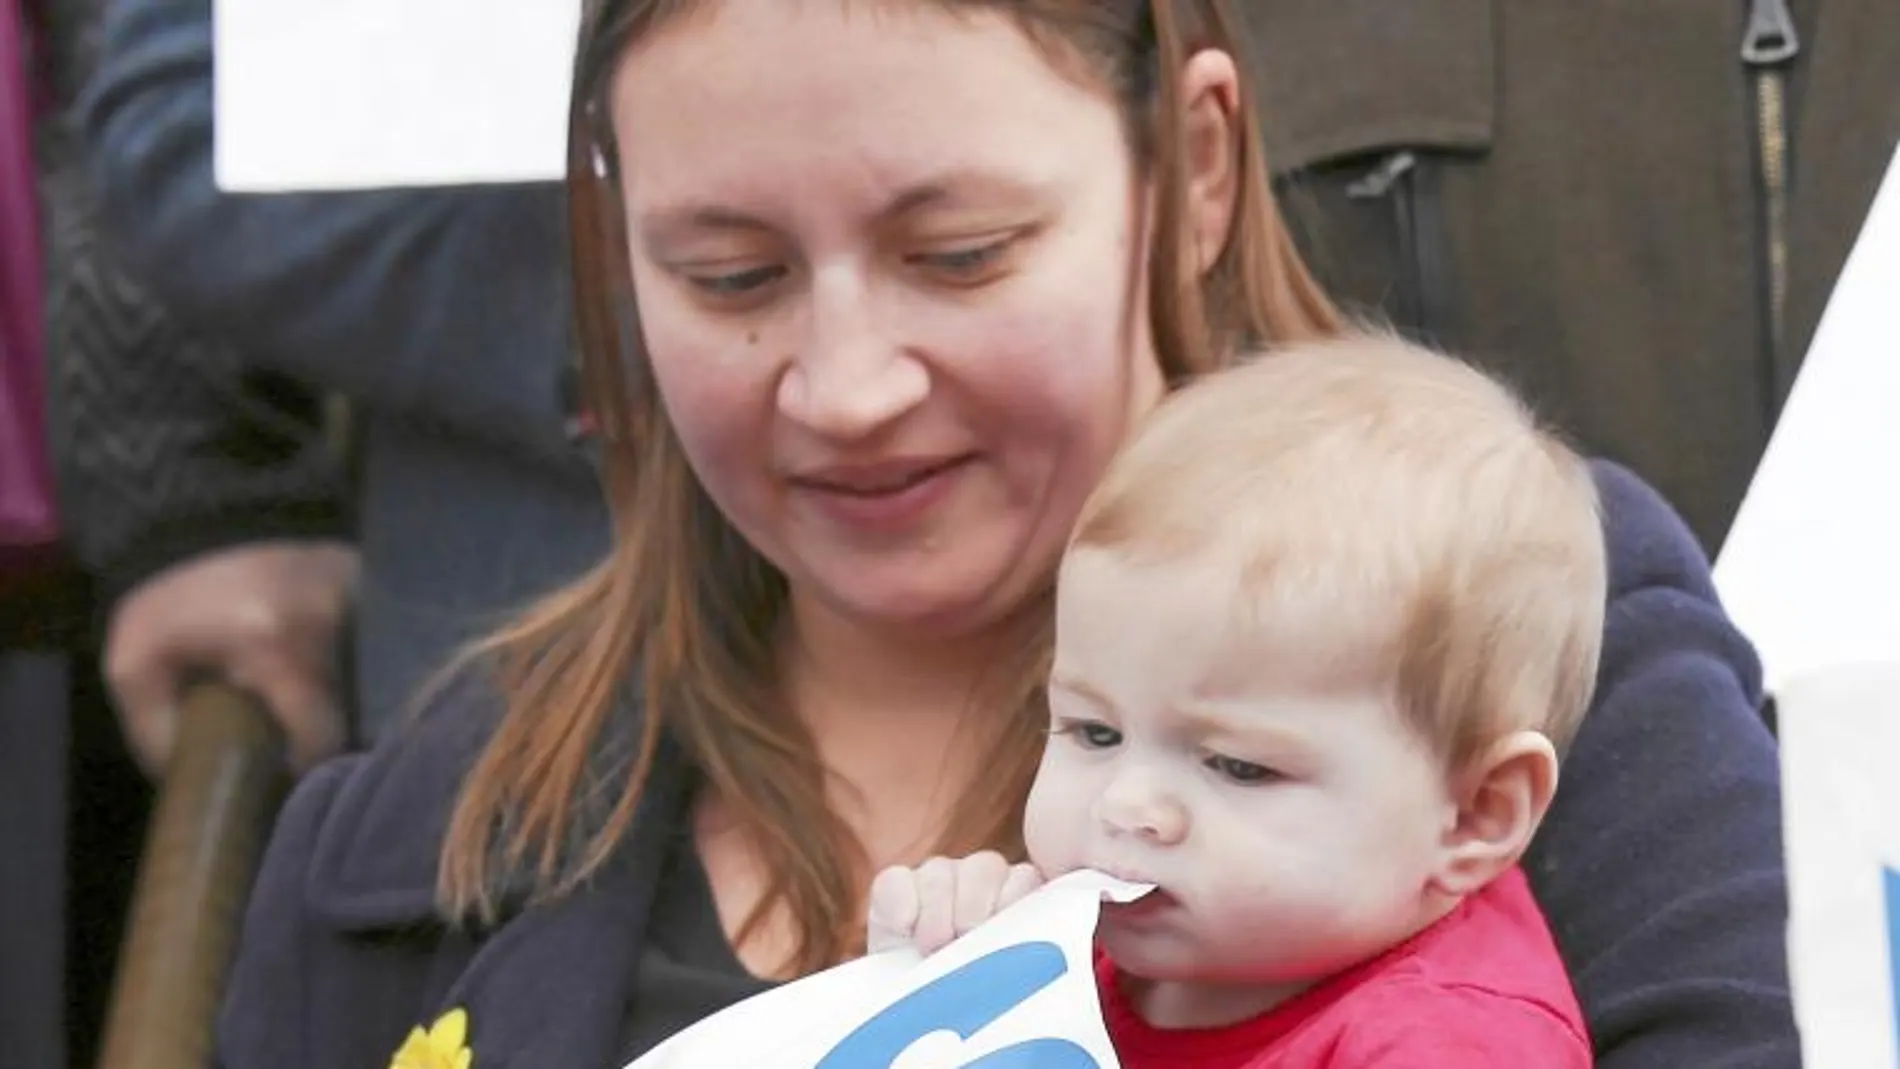 A MORDISCOS. Un bebé de seis meses muerde un cartel de apoyo a la secesión durante un acto de Alex Salmond en Edimburgo